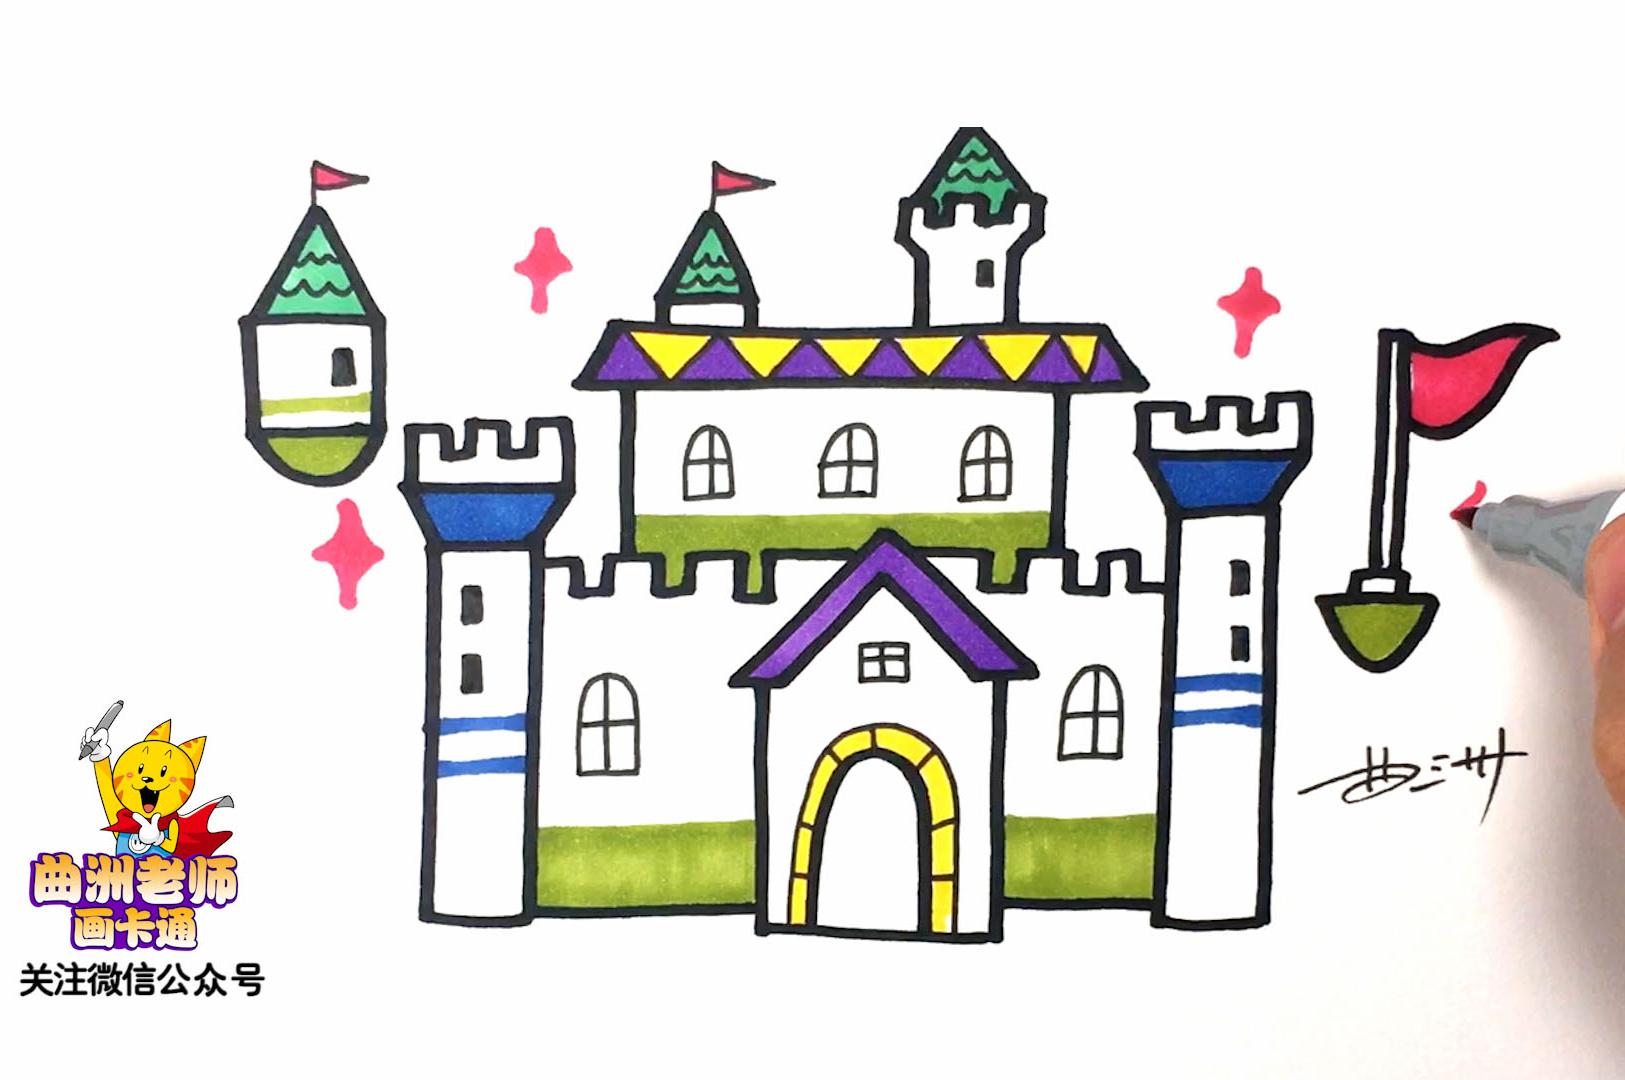 简笔画:魔法学校,魔法城堡 | 曲洲老师画卡通